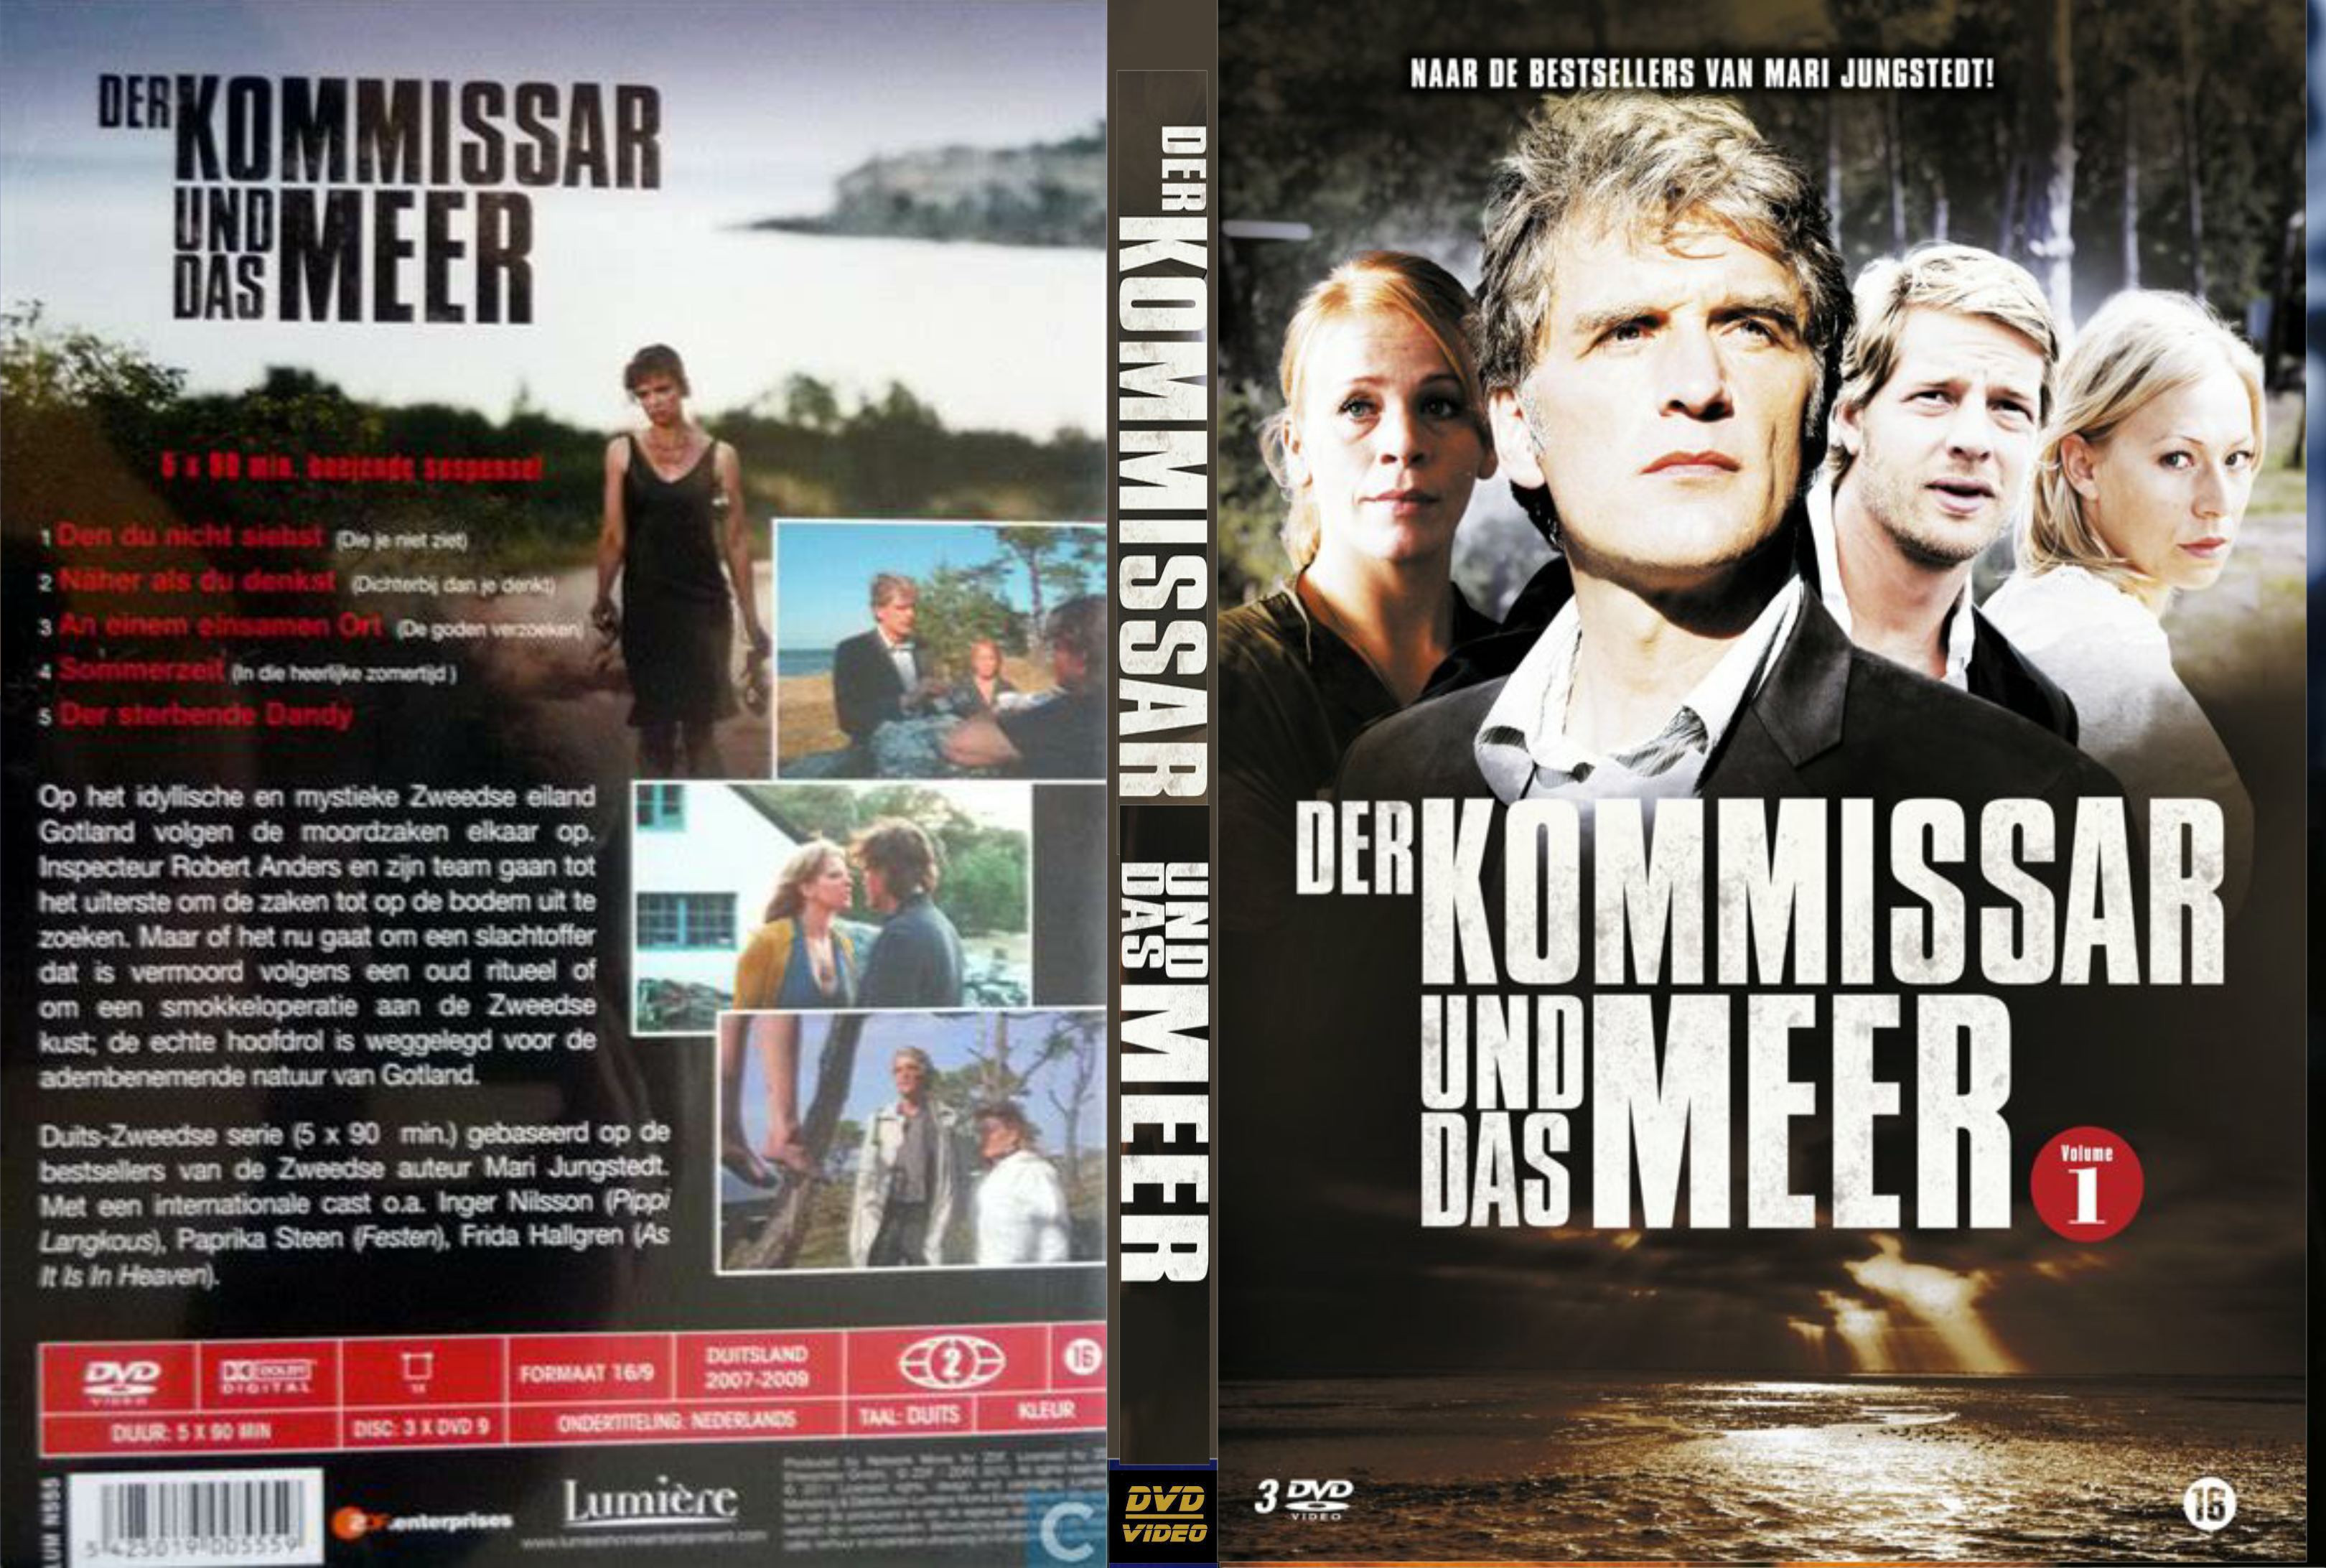 Der Kommissar und das Meer DVD 3 van 3.